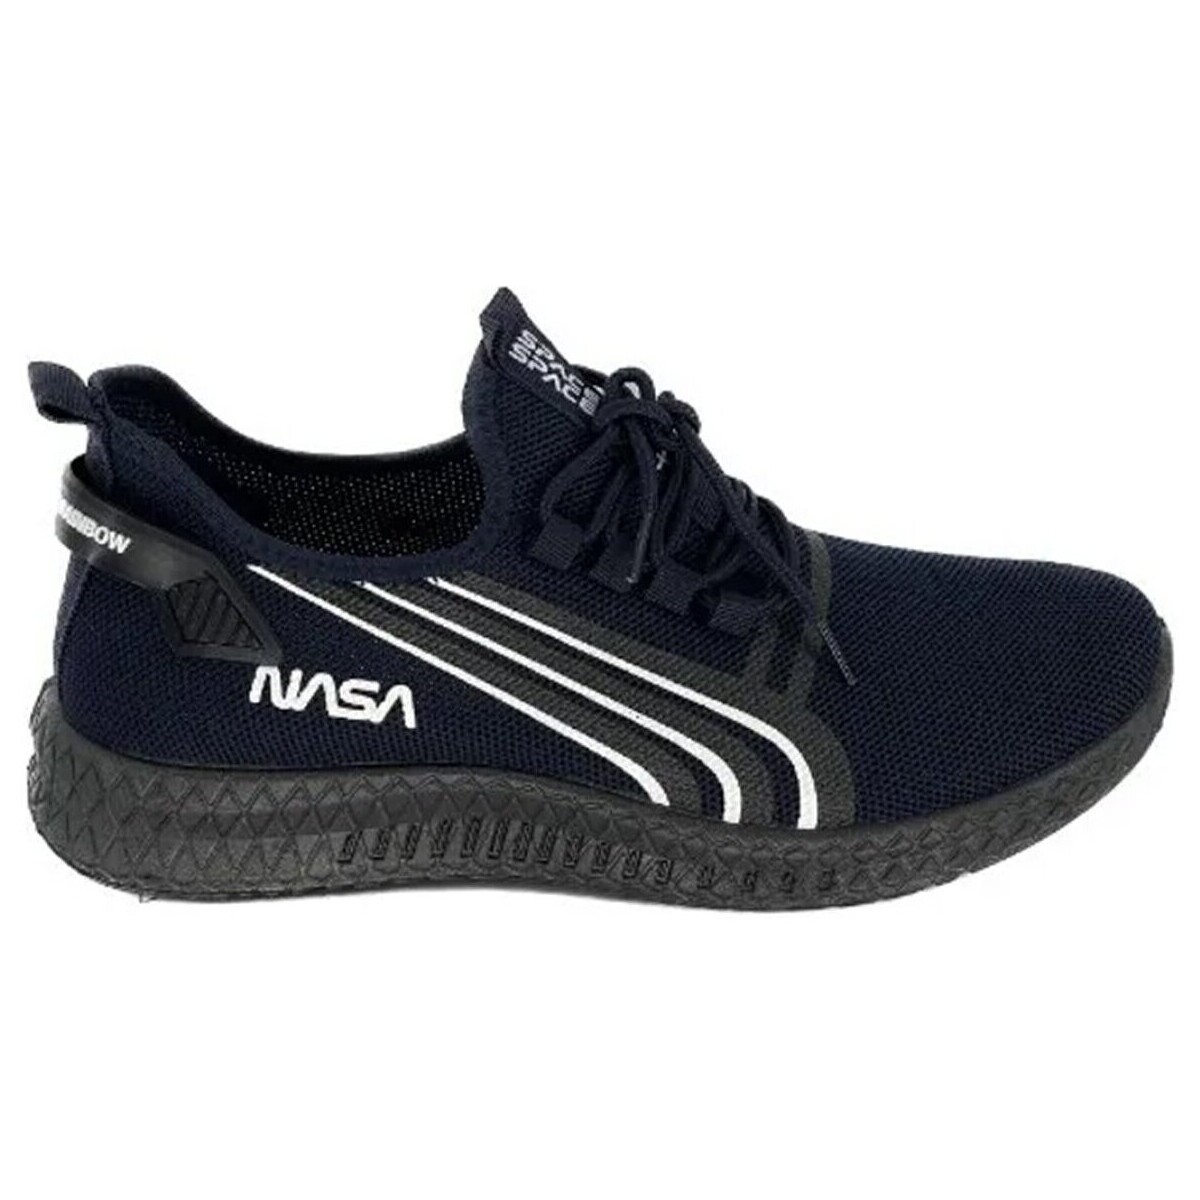 Skor Herr Sneakers Nasa GNS-3029-B Blå